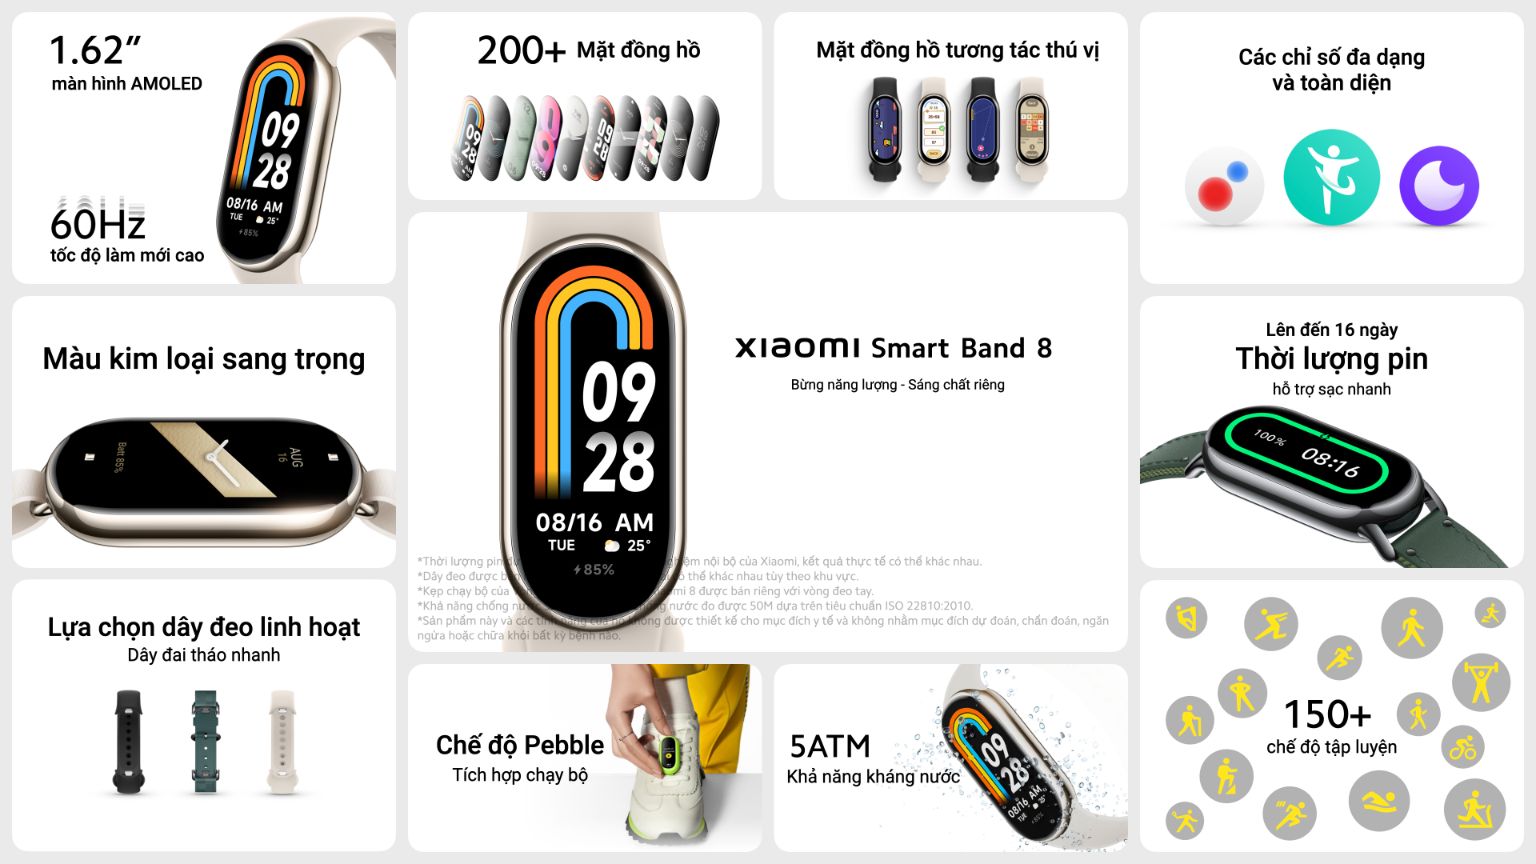 Xiaomi 2.1 Xiaomi Smart Band 8 đạt doanh số 10,000 sản phẩm sau 3 tuần mở bán